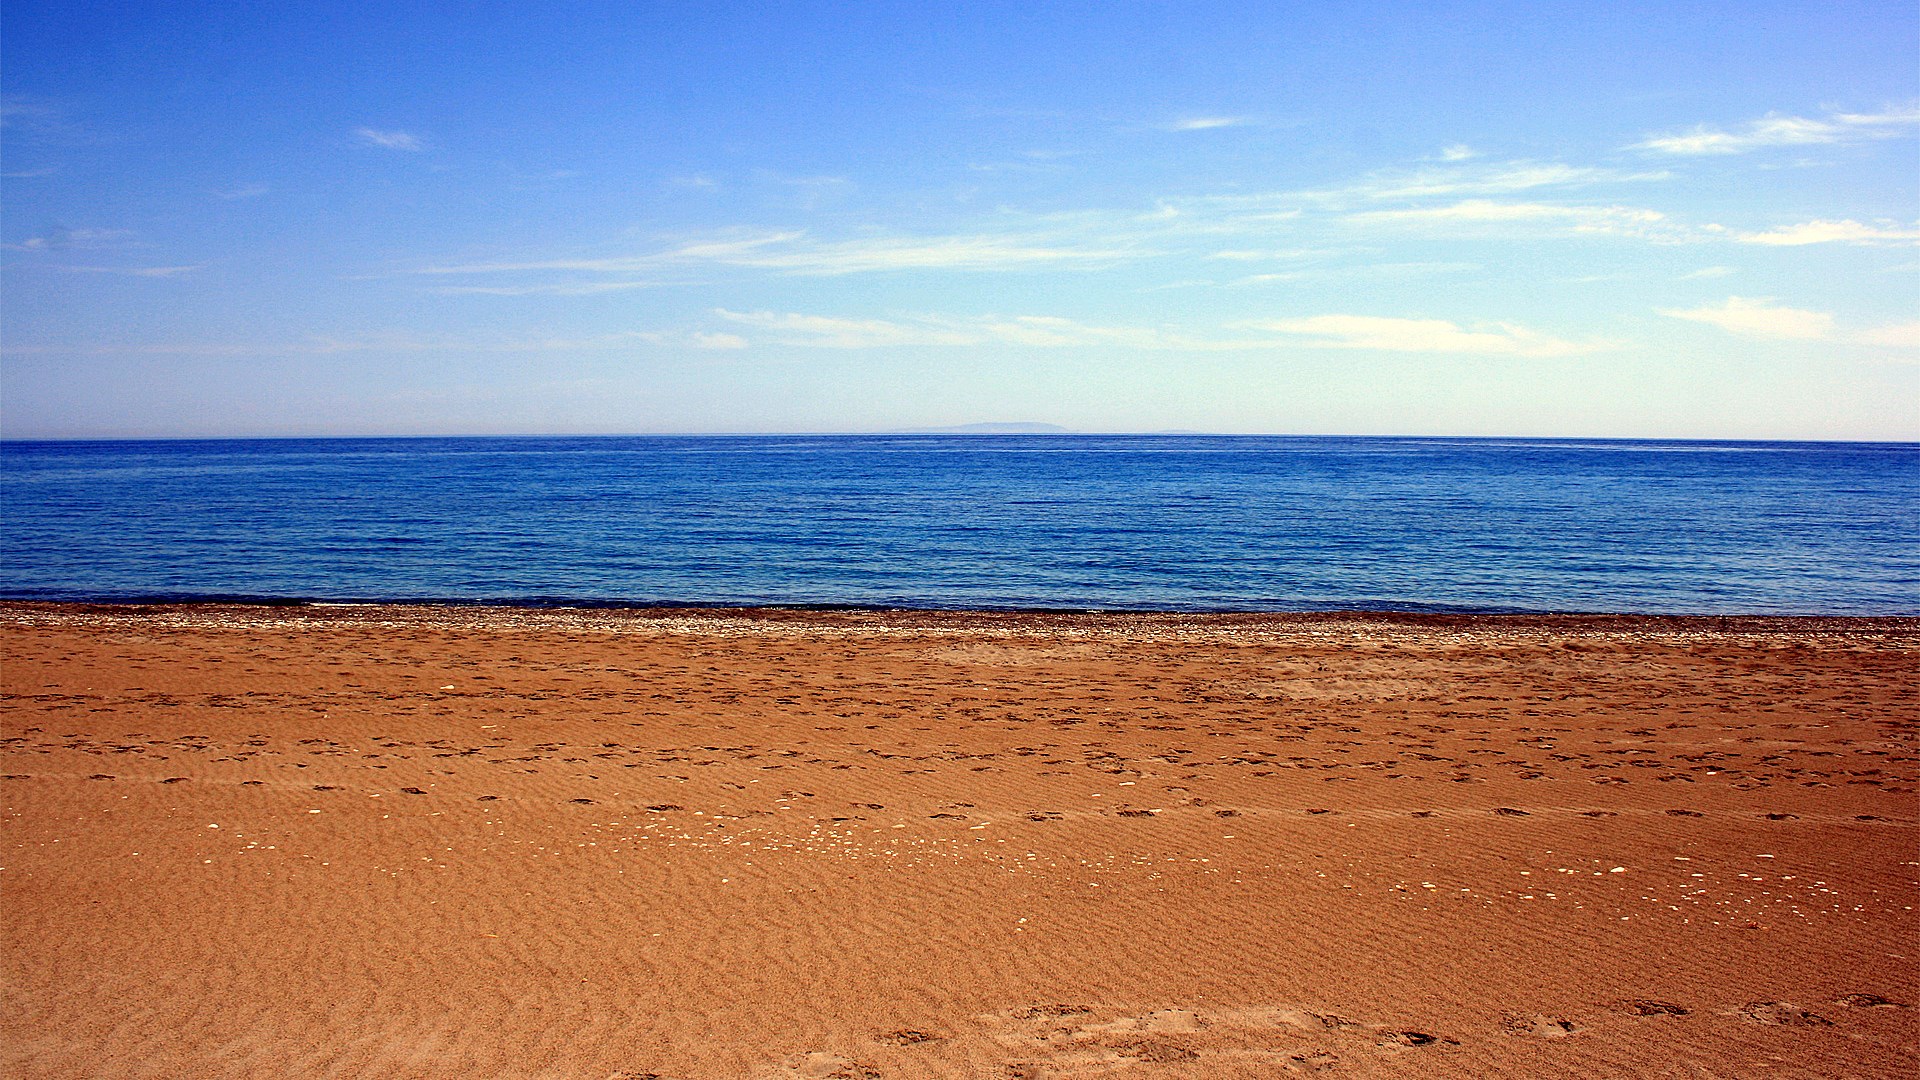 Agia Roumeli, The Peaceful Beach in Southwest Crete | 03 June 2015 | Alargo